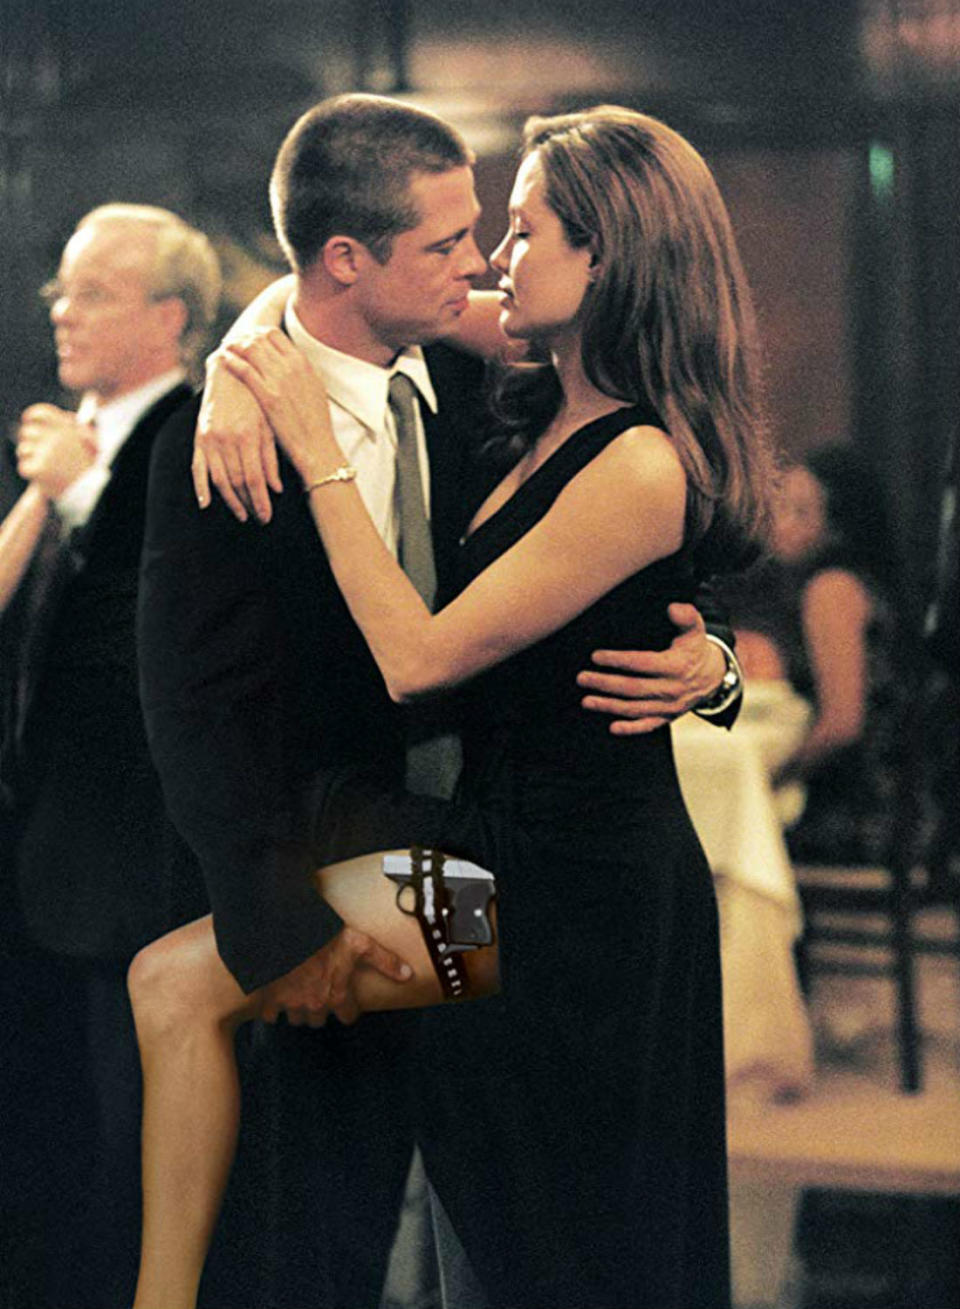 <p>En visionnant le film <i>Mr and Mrs Smith</i>, les téléspectateurs ont pu voir Brad Pitt et Angelina Jolie tomber amoureux. Sur le tournage, l'actrice est divorcée de Billy Bob Thornton tandis que Brad Pitt est marié à Jennifer Aniston. Le couple annonce sa séparation en janvier 2005 et Angelina Jolie est rapidement accusée d'être une briseuse de couple. Elle nie, avant de reconnaître qu'ils sont tombés amoureux pendant le tournage. Une histoire d'amour qui durera 11 ans. </p>...